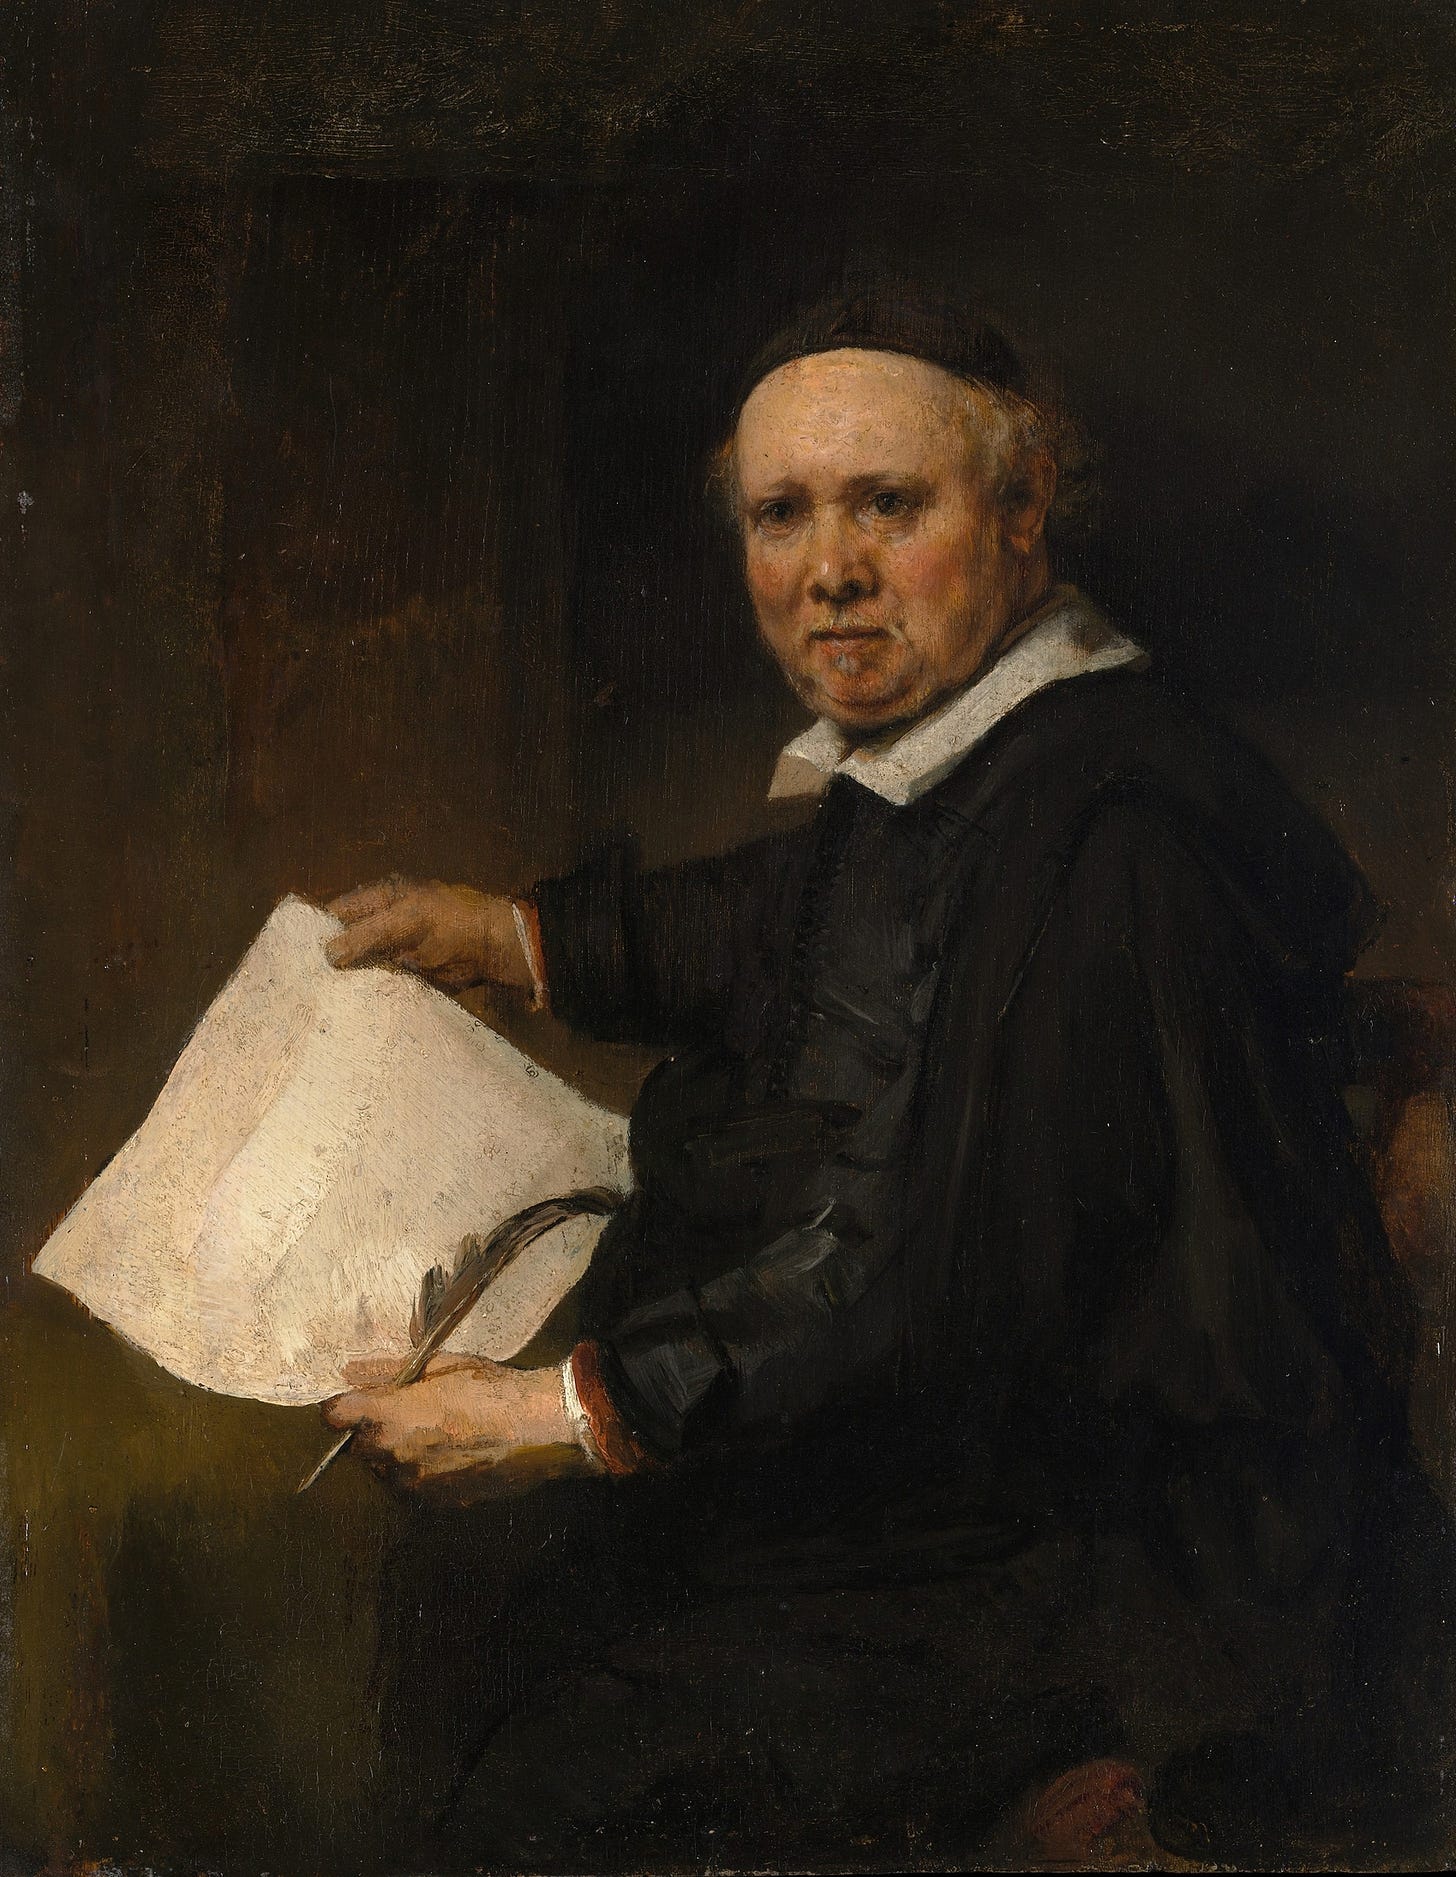 Lieven Willemsz van Coppenol by Rembrandt van Rijn